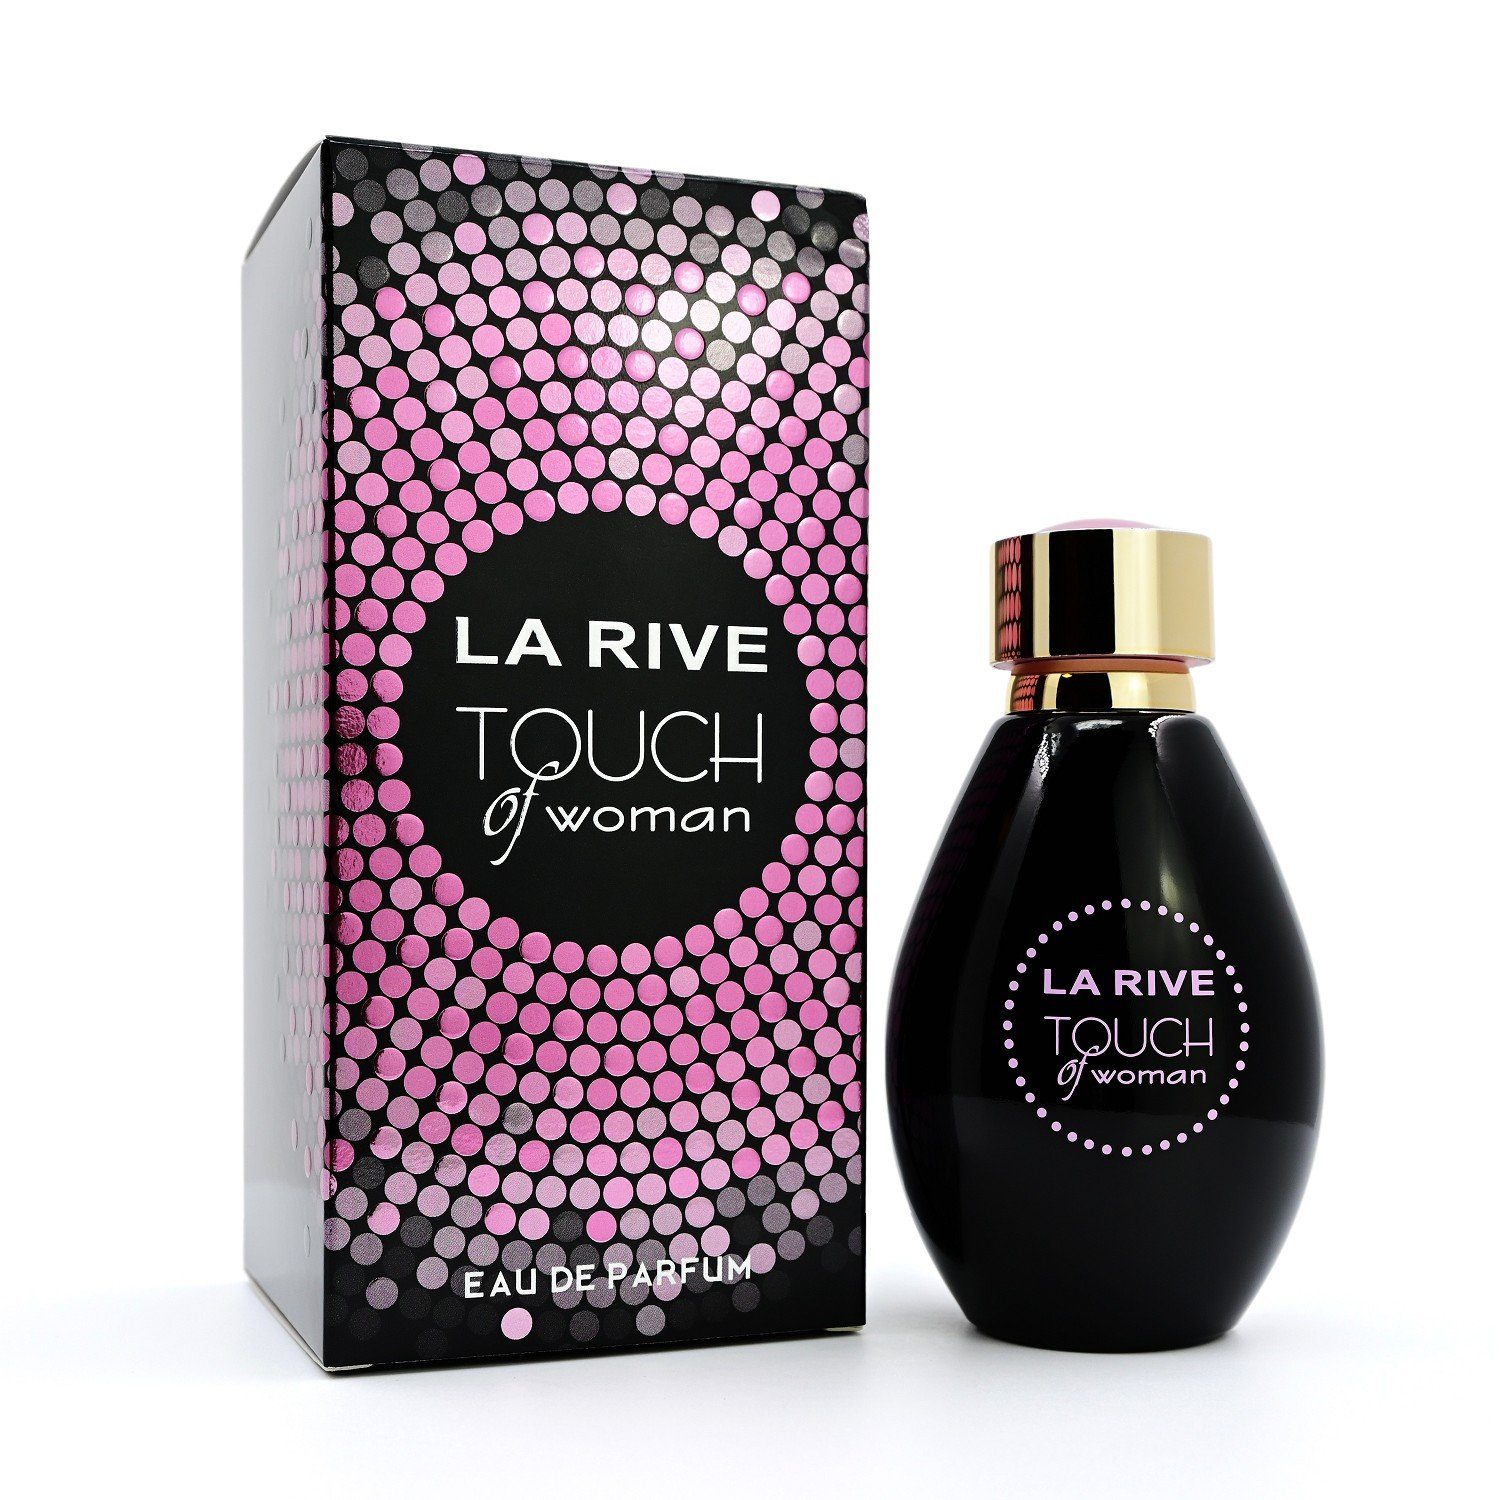 La Rive Eau de ml Parfum Touch Eau of LA - Parfum RIVE de - Woman 90